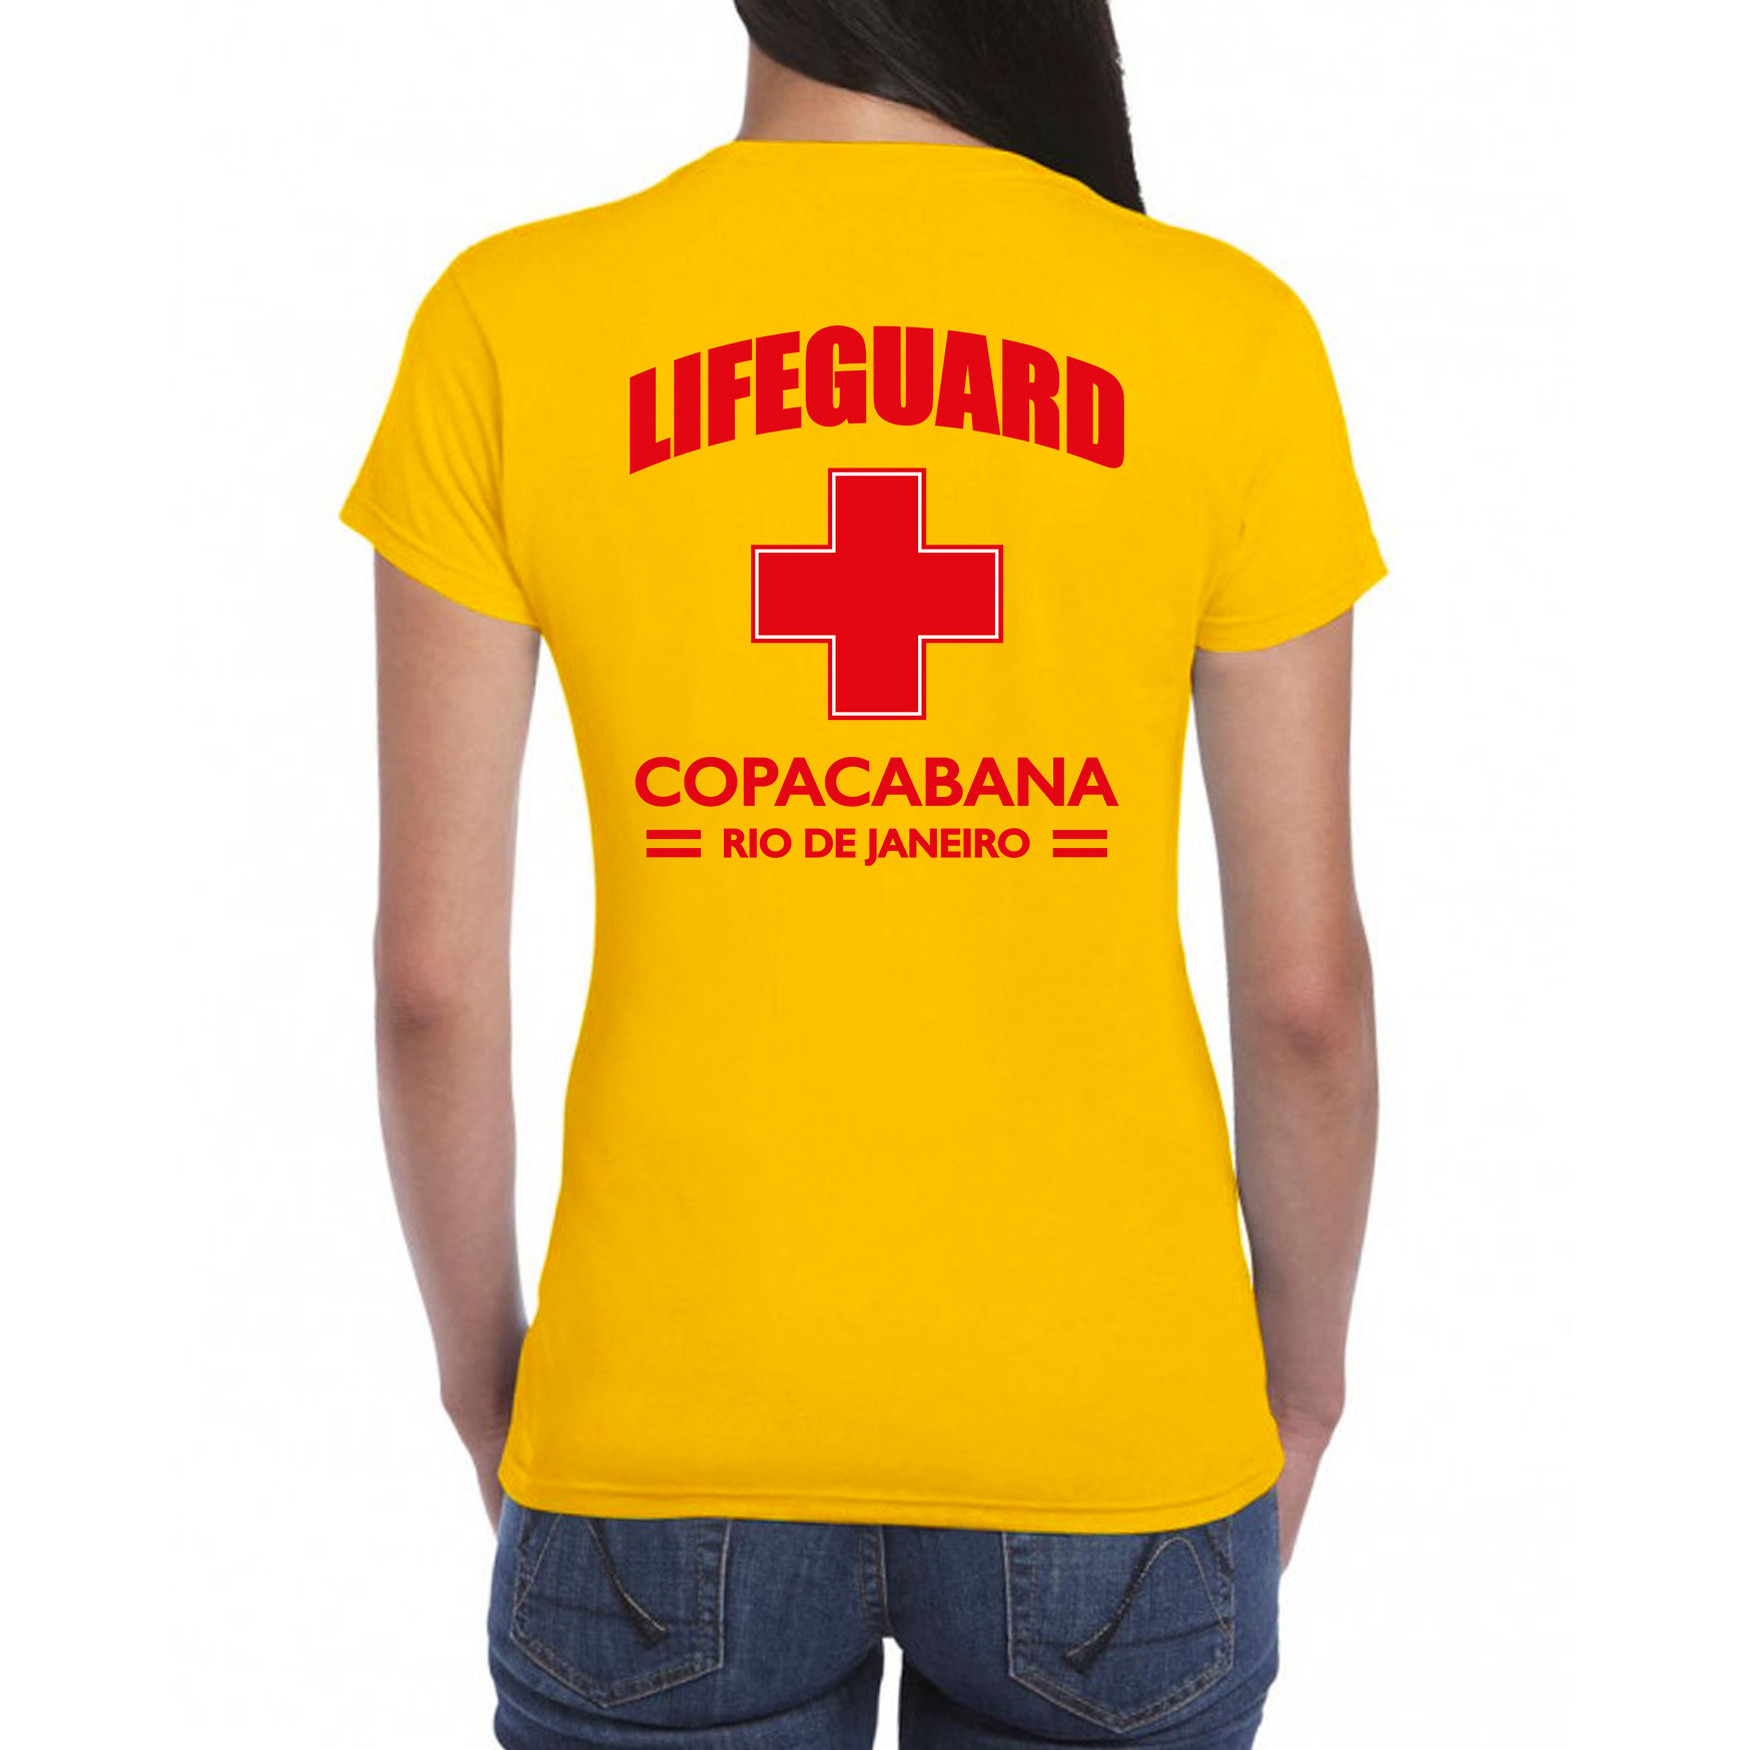 Lifeguard- strandwacht verkleed t-shirt-shirt Lifeguard Copacabana Rio De Janeiro geel voor dames